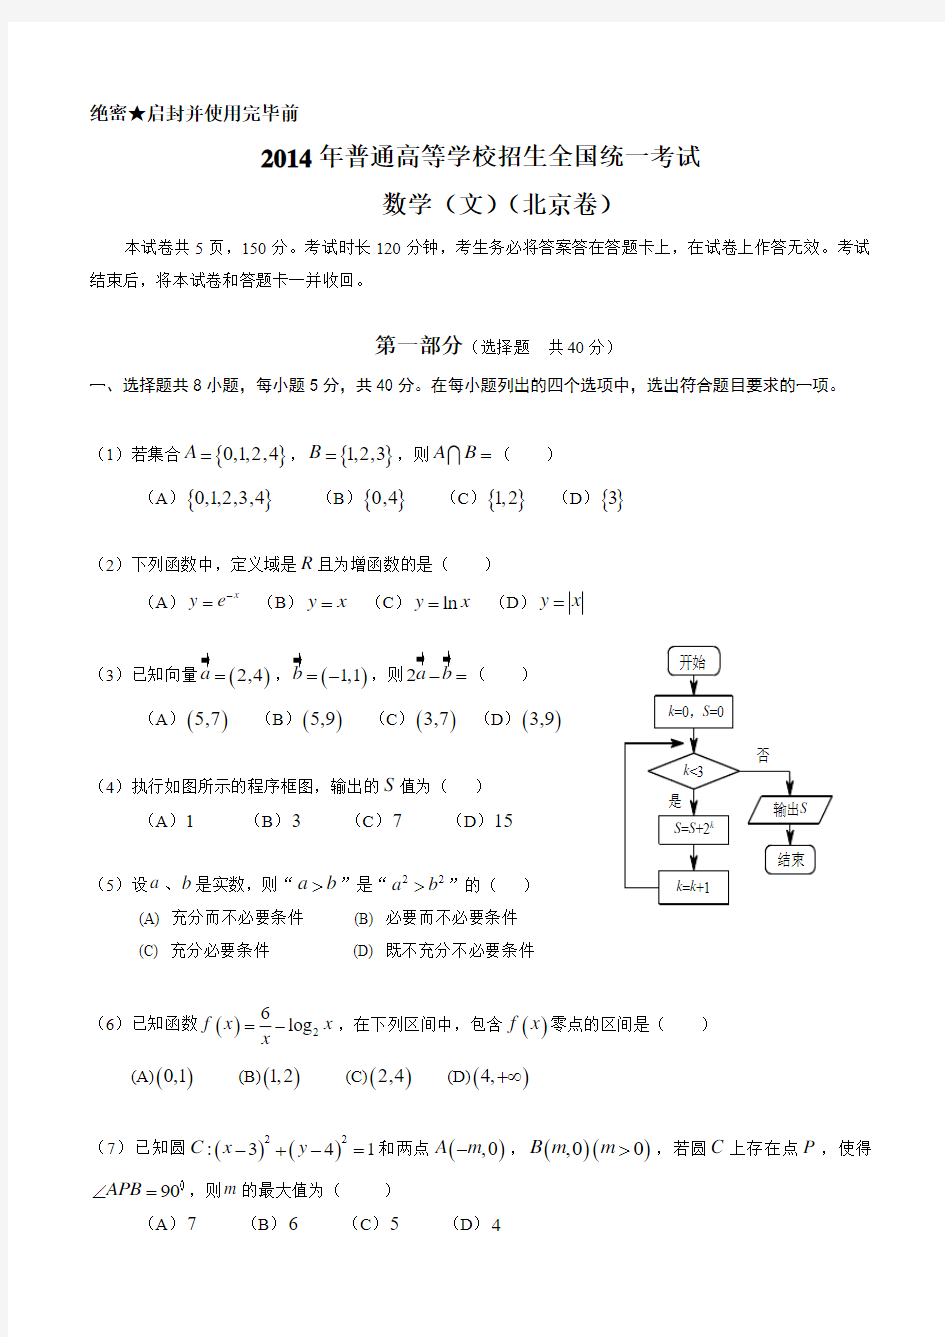 2014年北京高考数学文科试题及标准答案